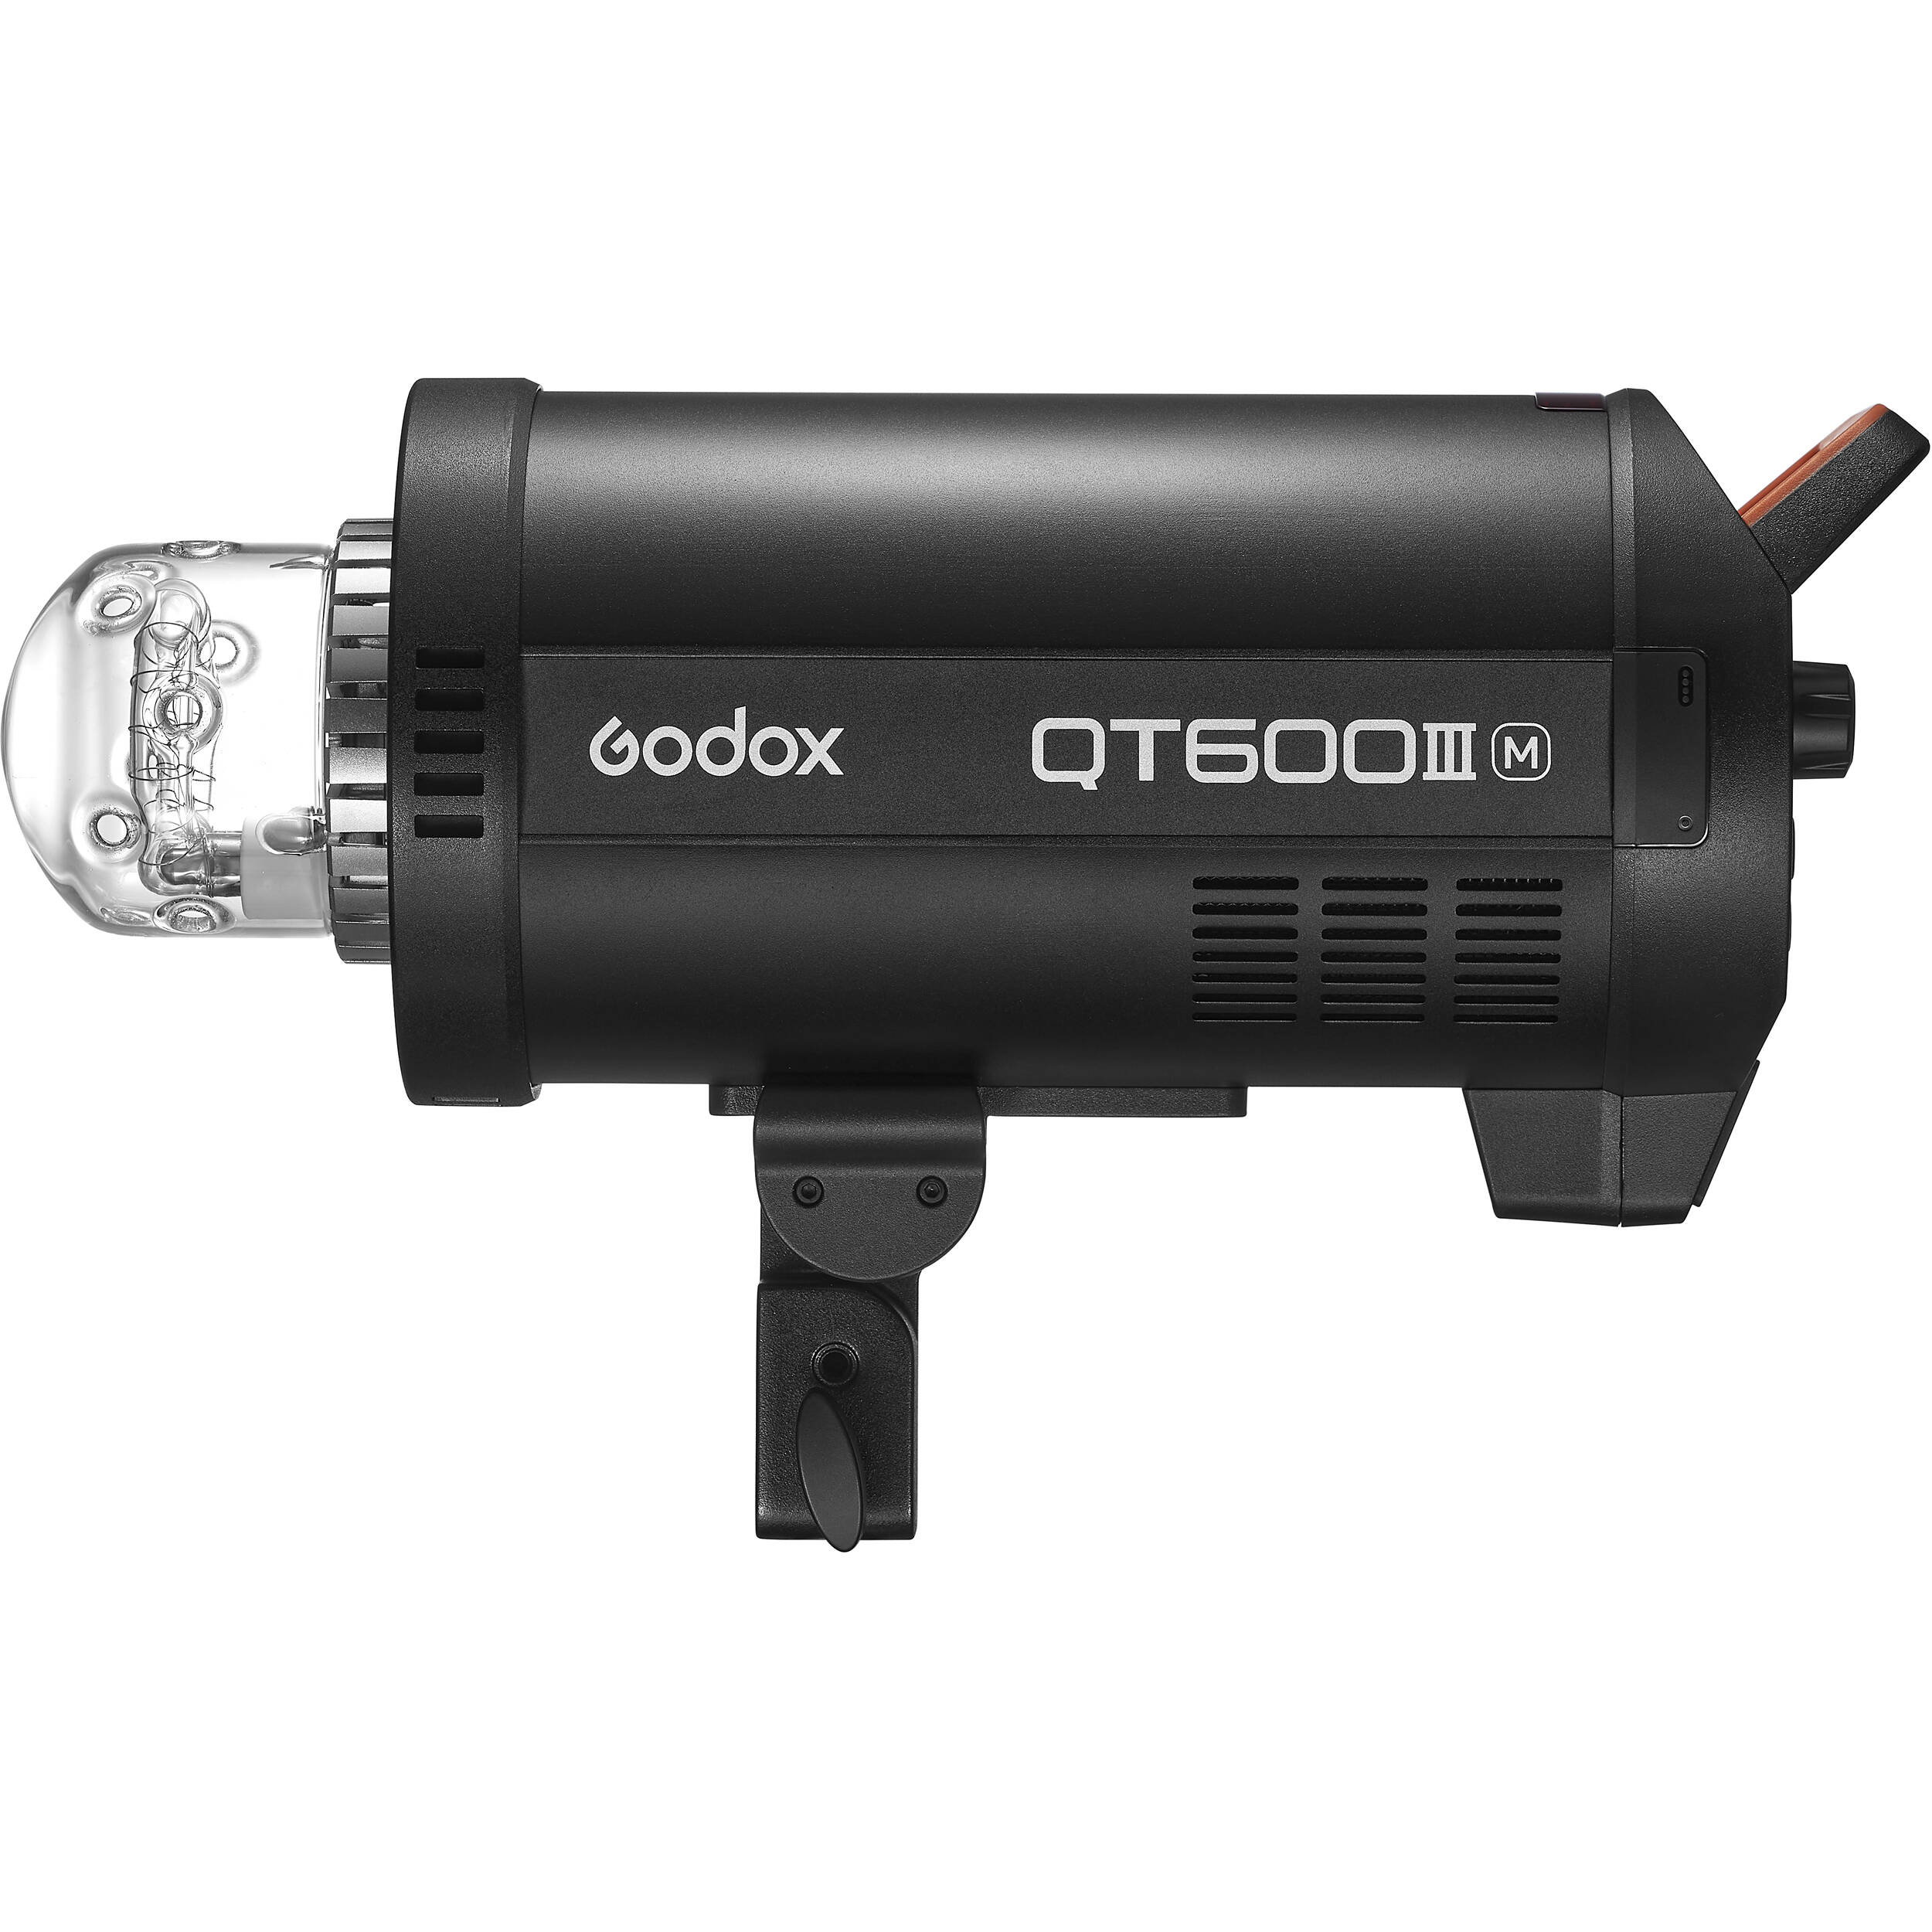    Godox QT600IIIM    Ultra-mart